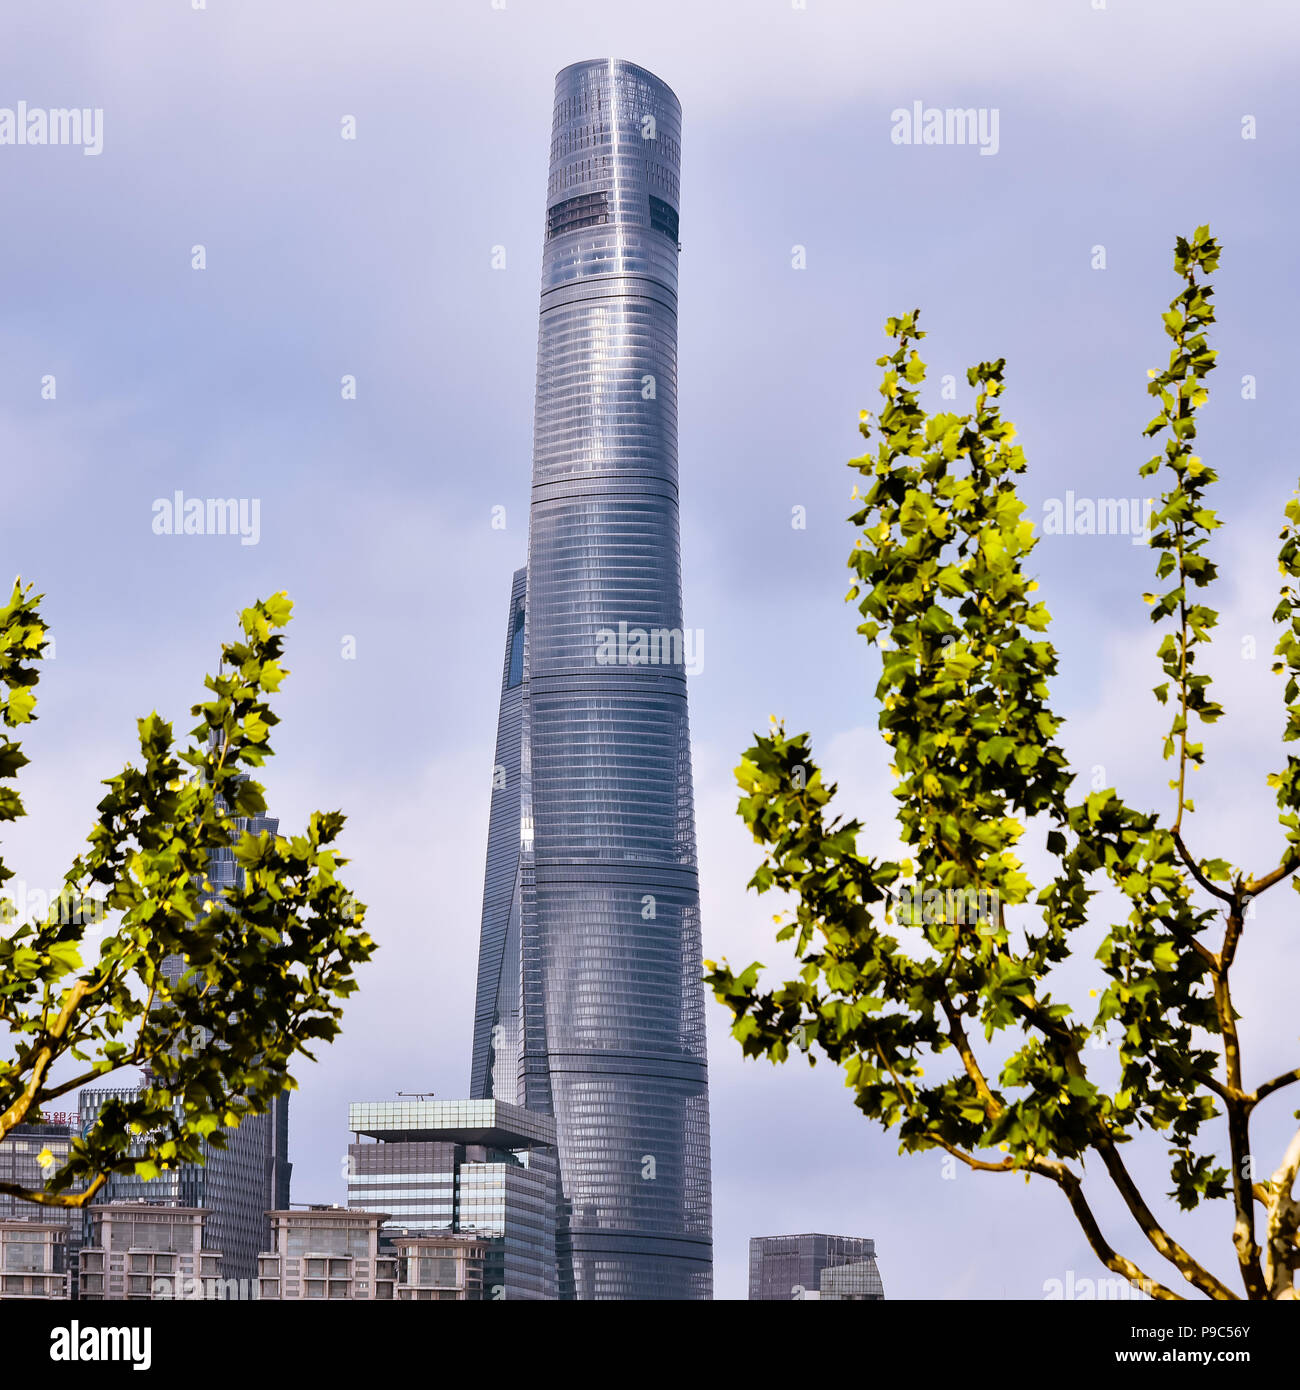 Pudong, Shanghai/China - Apr. 24, 2018: Shanghai Tower, a 128-story mega tall skyscraper in Pudong, Shanghai, China. Stock Photo